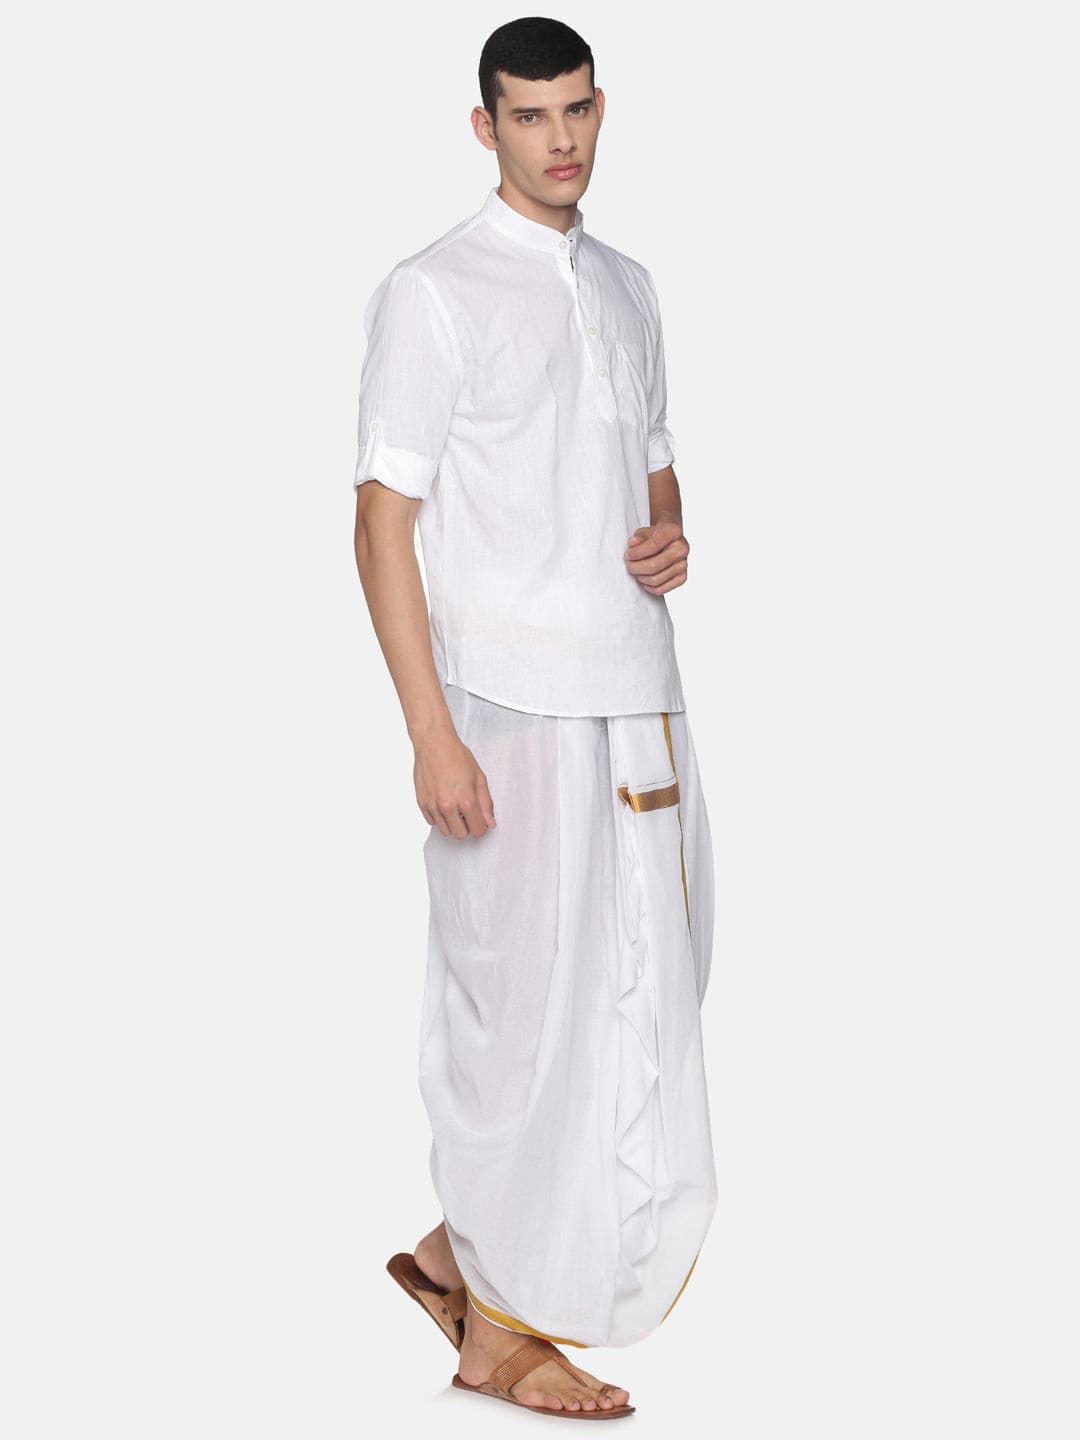 Men White Colour Cotton Kurta Dhoti Pant Set.